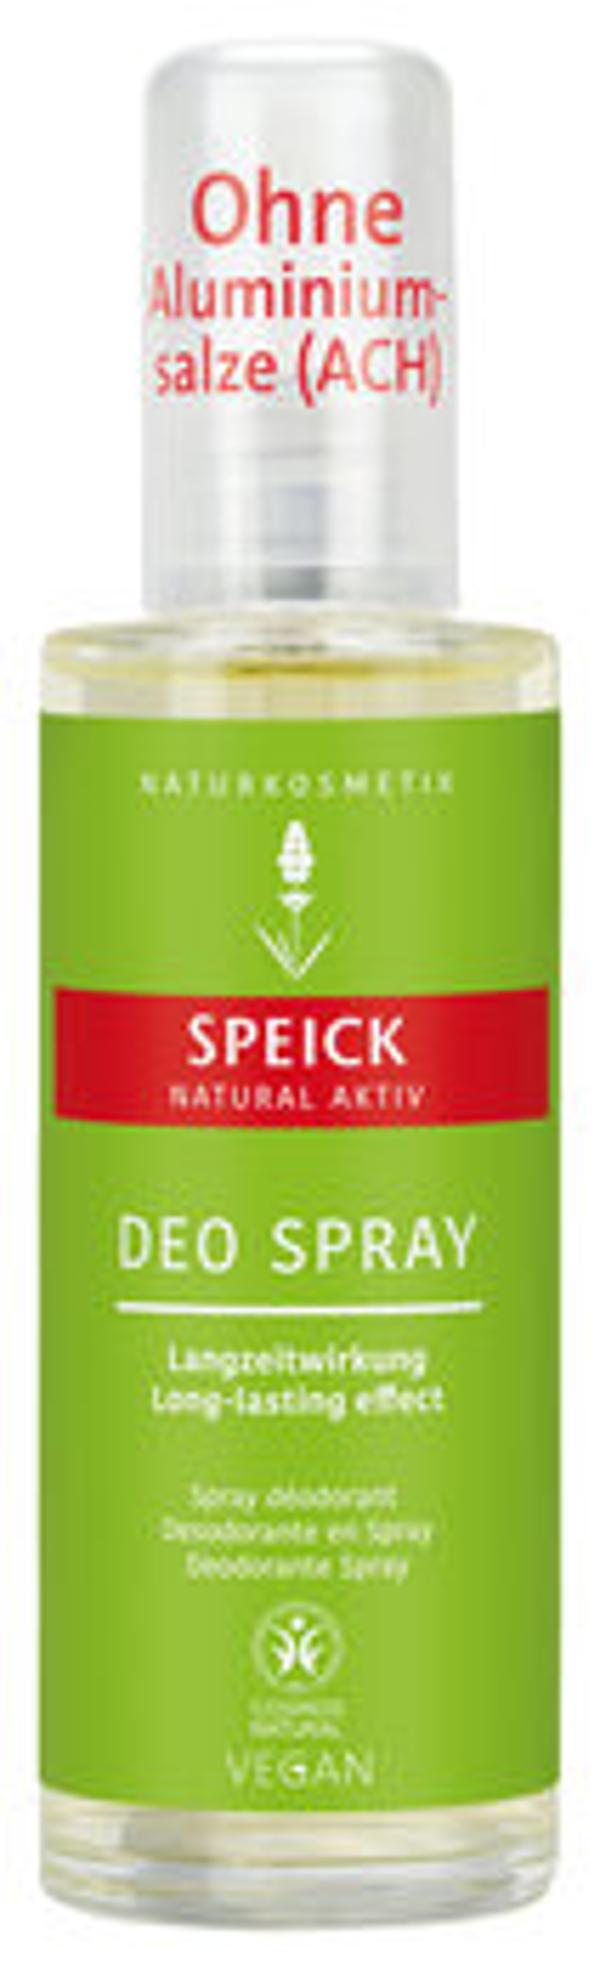 Produktfoto zu Deo Spray Natural Aktiv, 75 ml